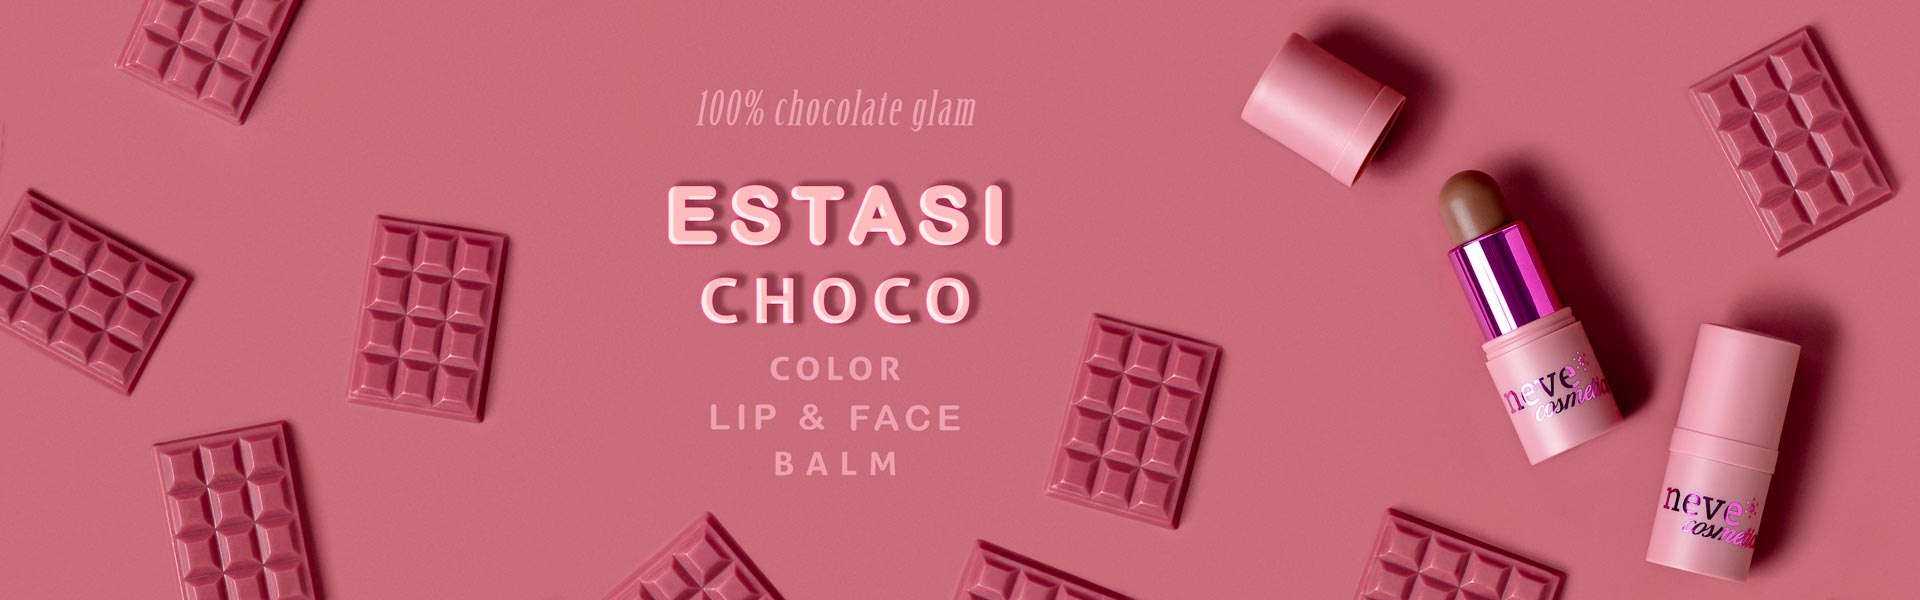 Estasi Choco color lip & face balm